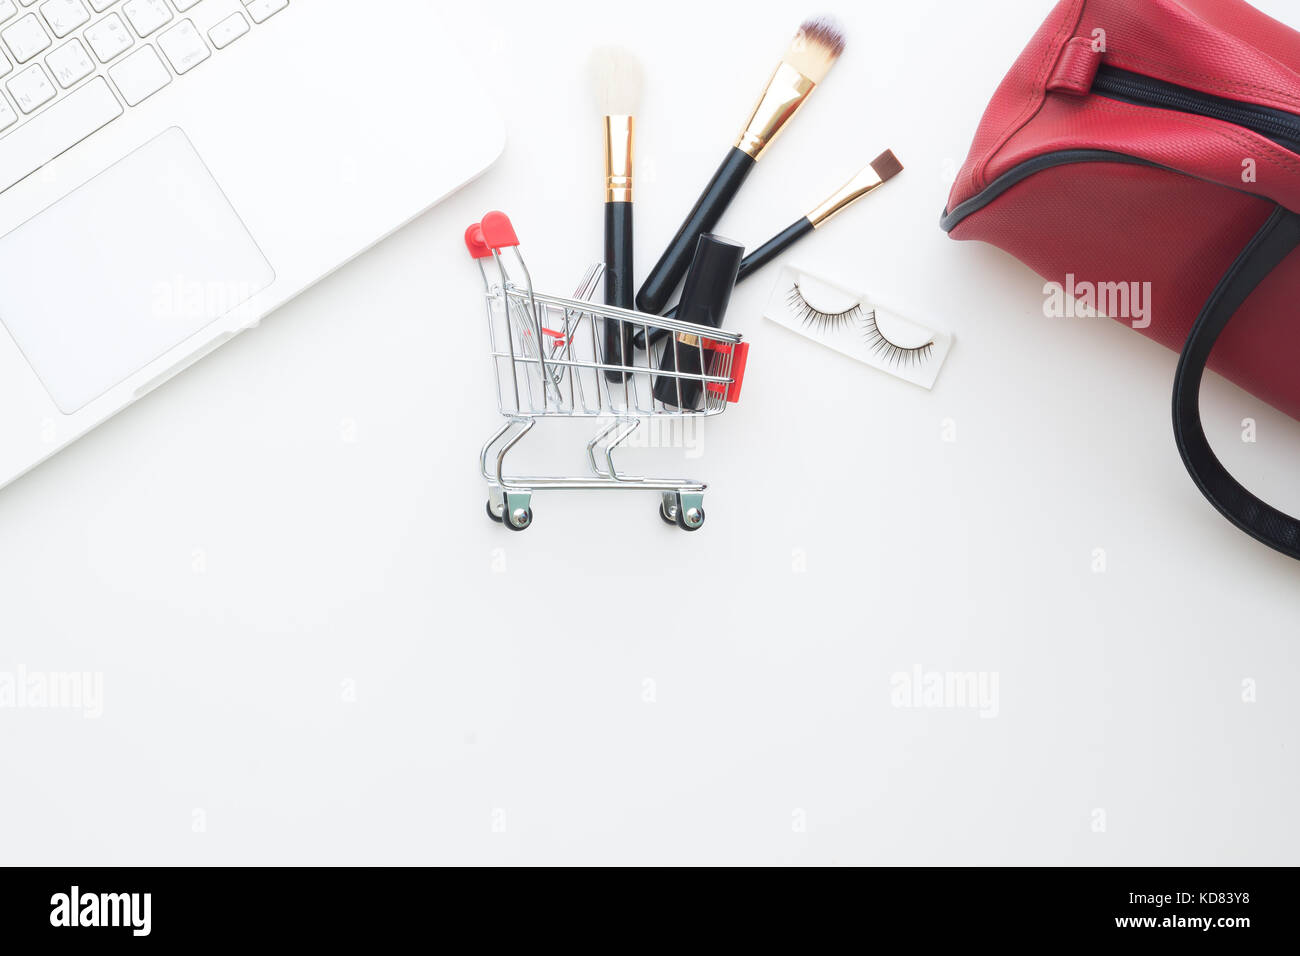 Elementi di bellezza e cosmetici nel carrello con computer portatile su sfondo bianco, shopping online Foto Stock